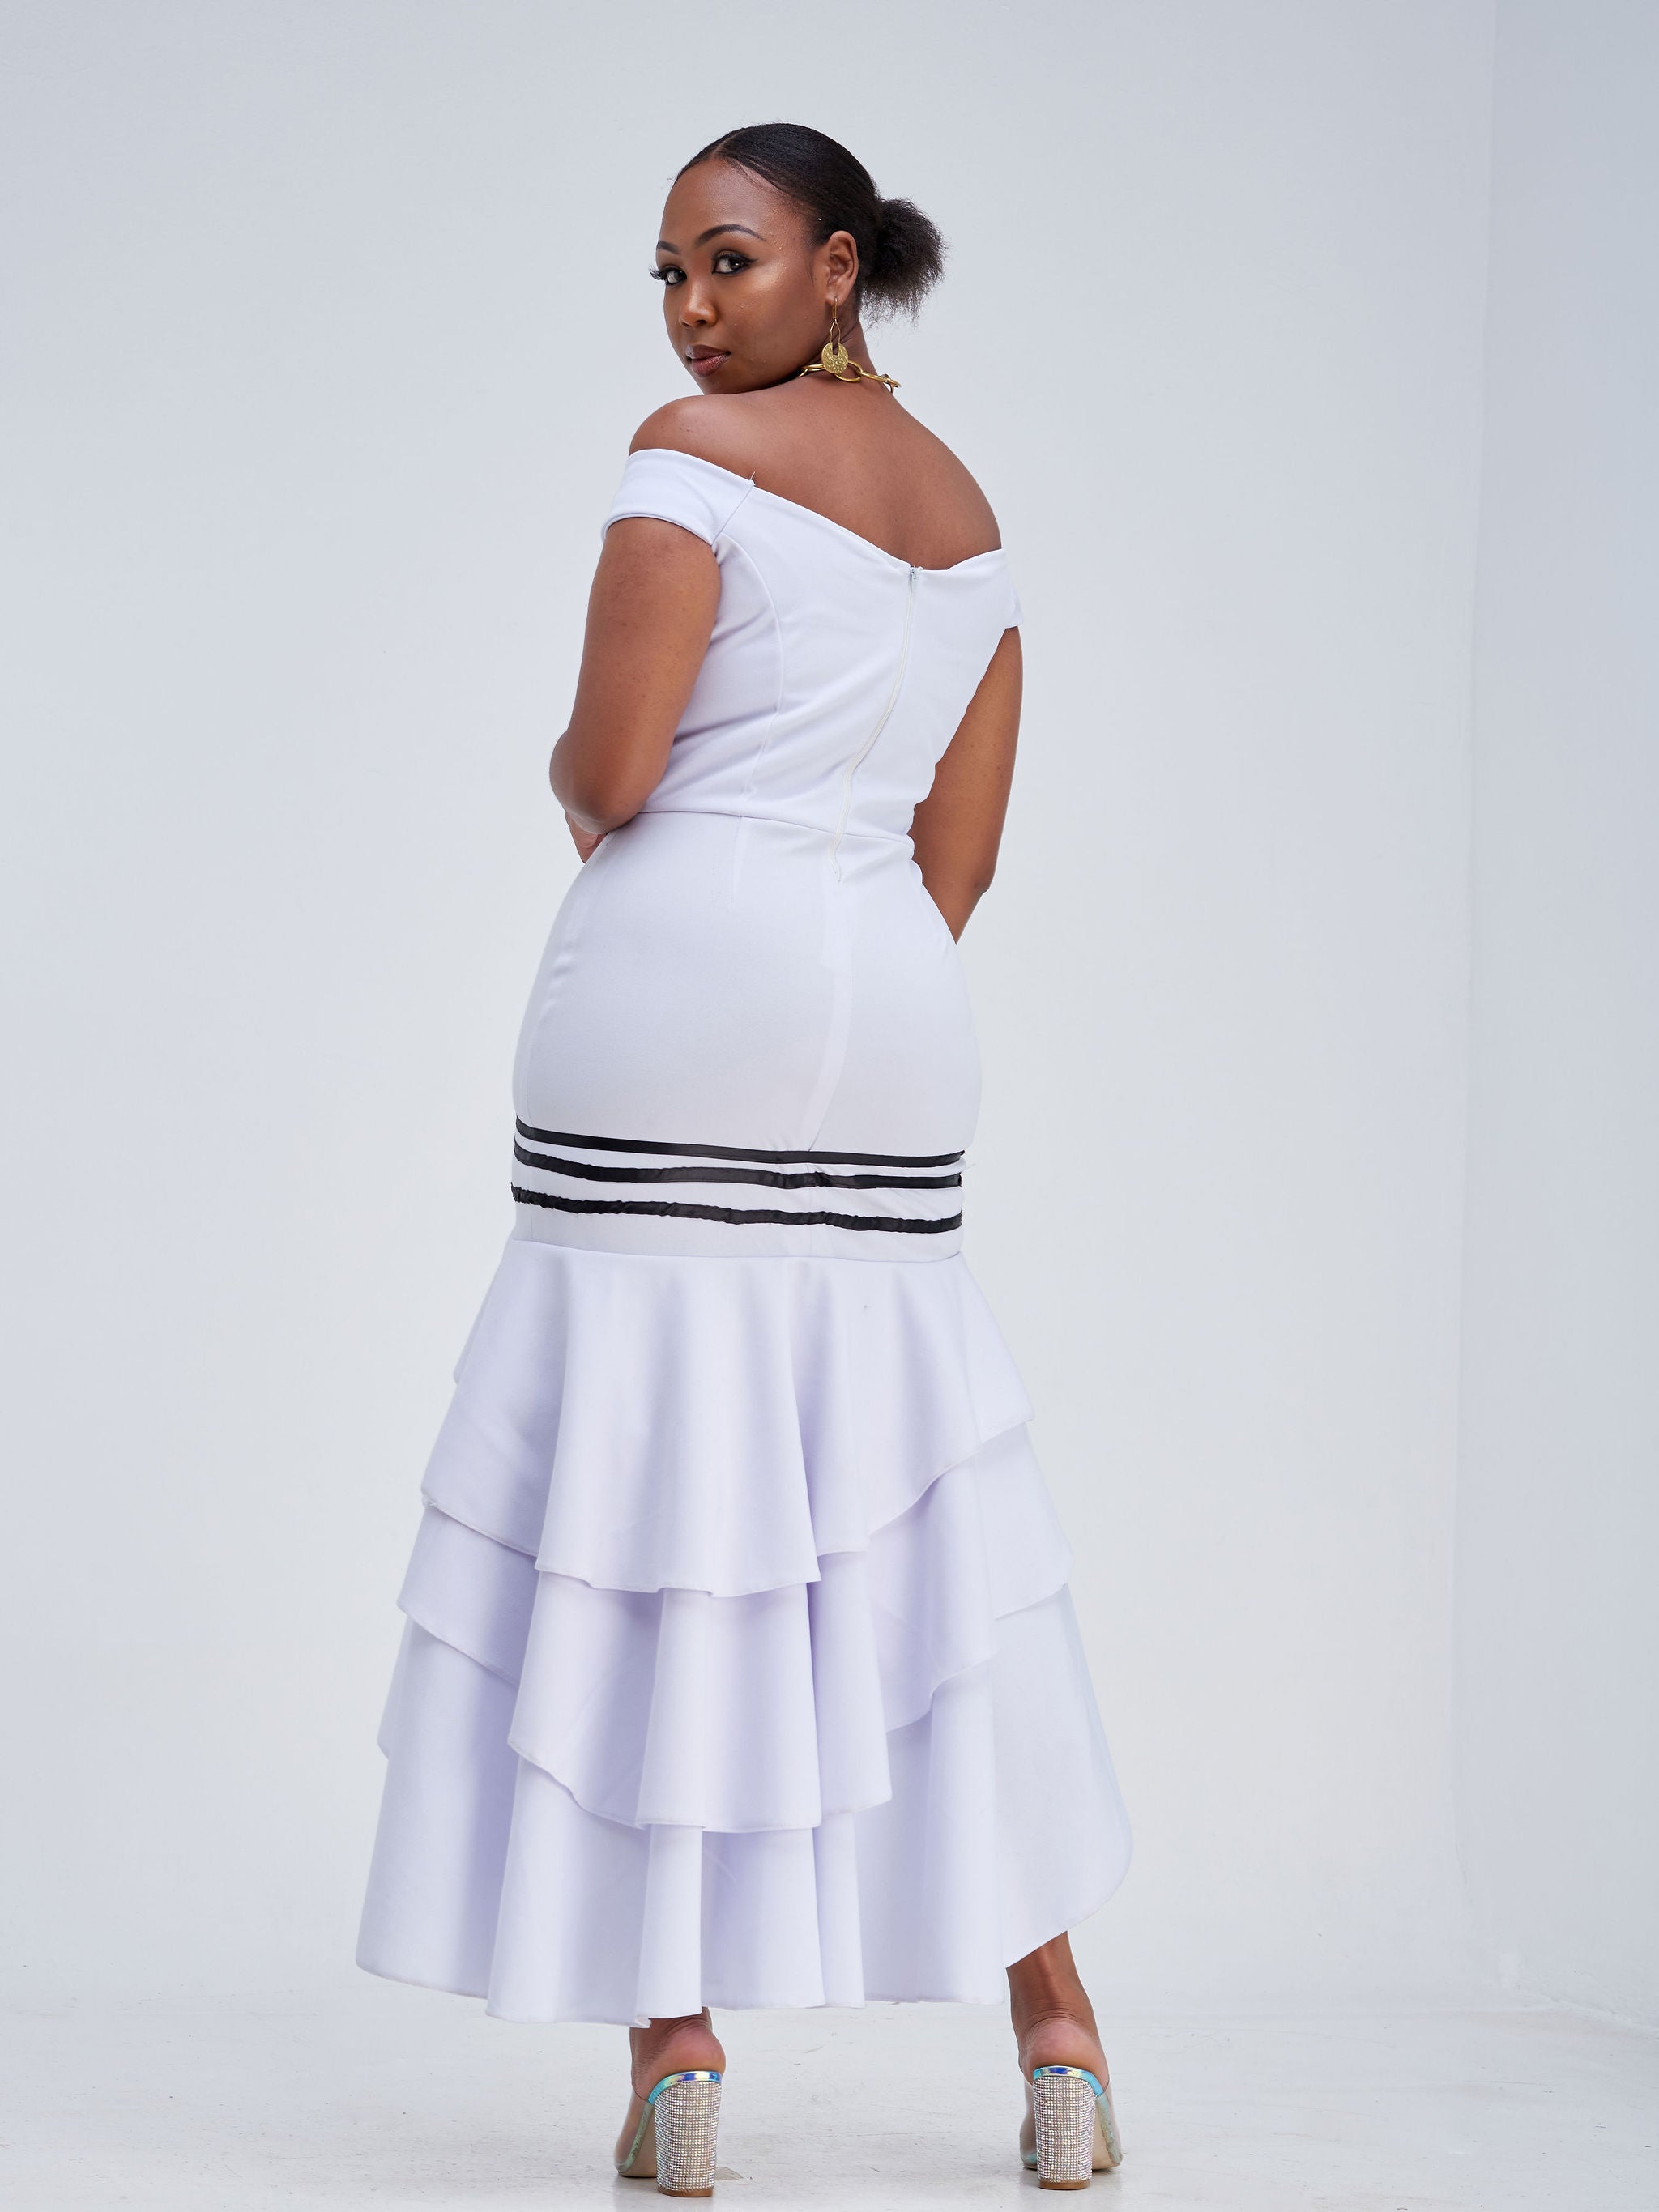 Clipkulture | 12 Elegant South African Wedding Dresses